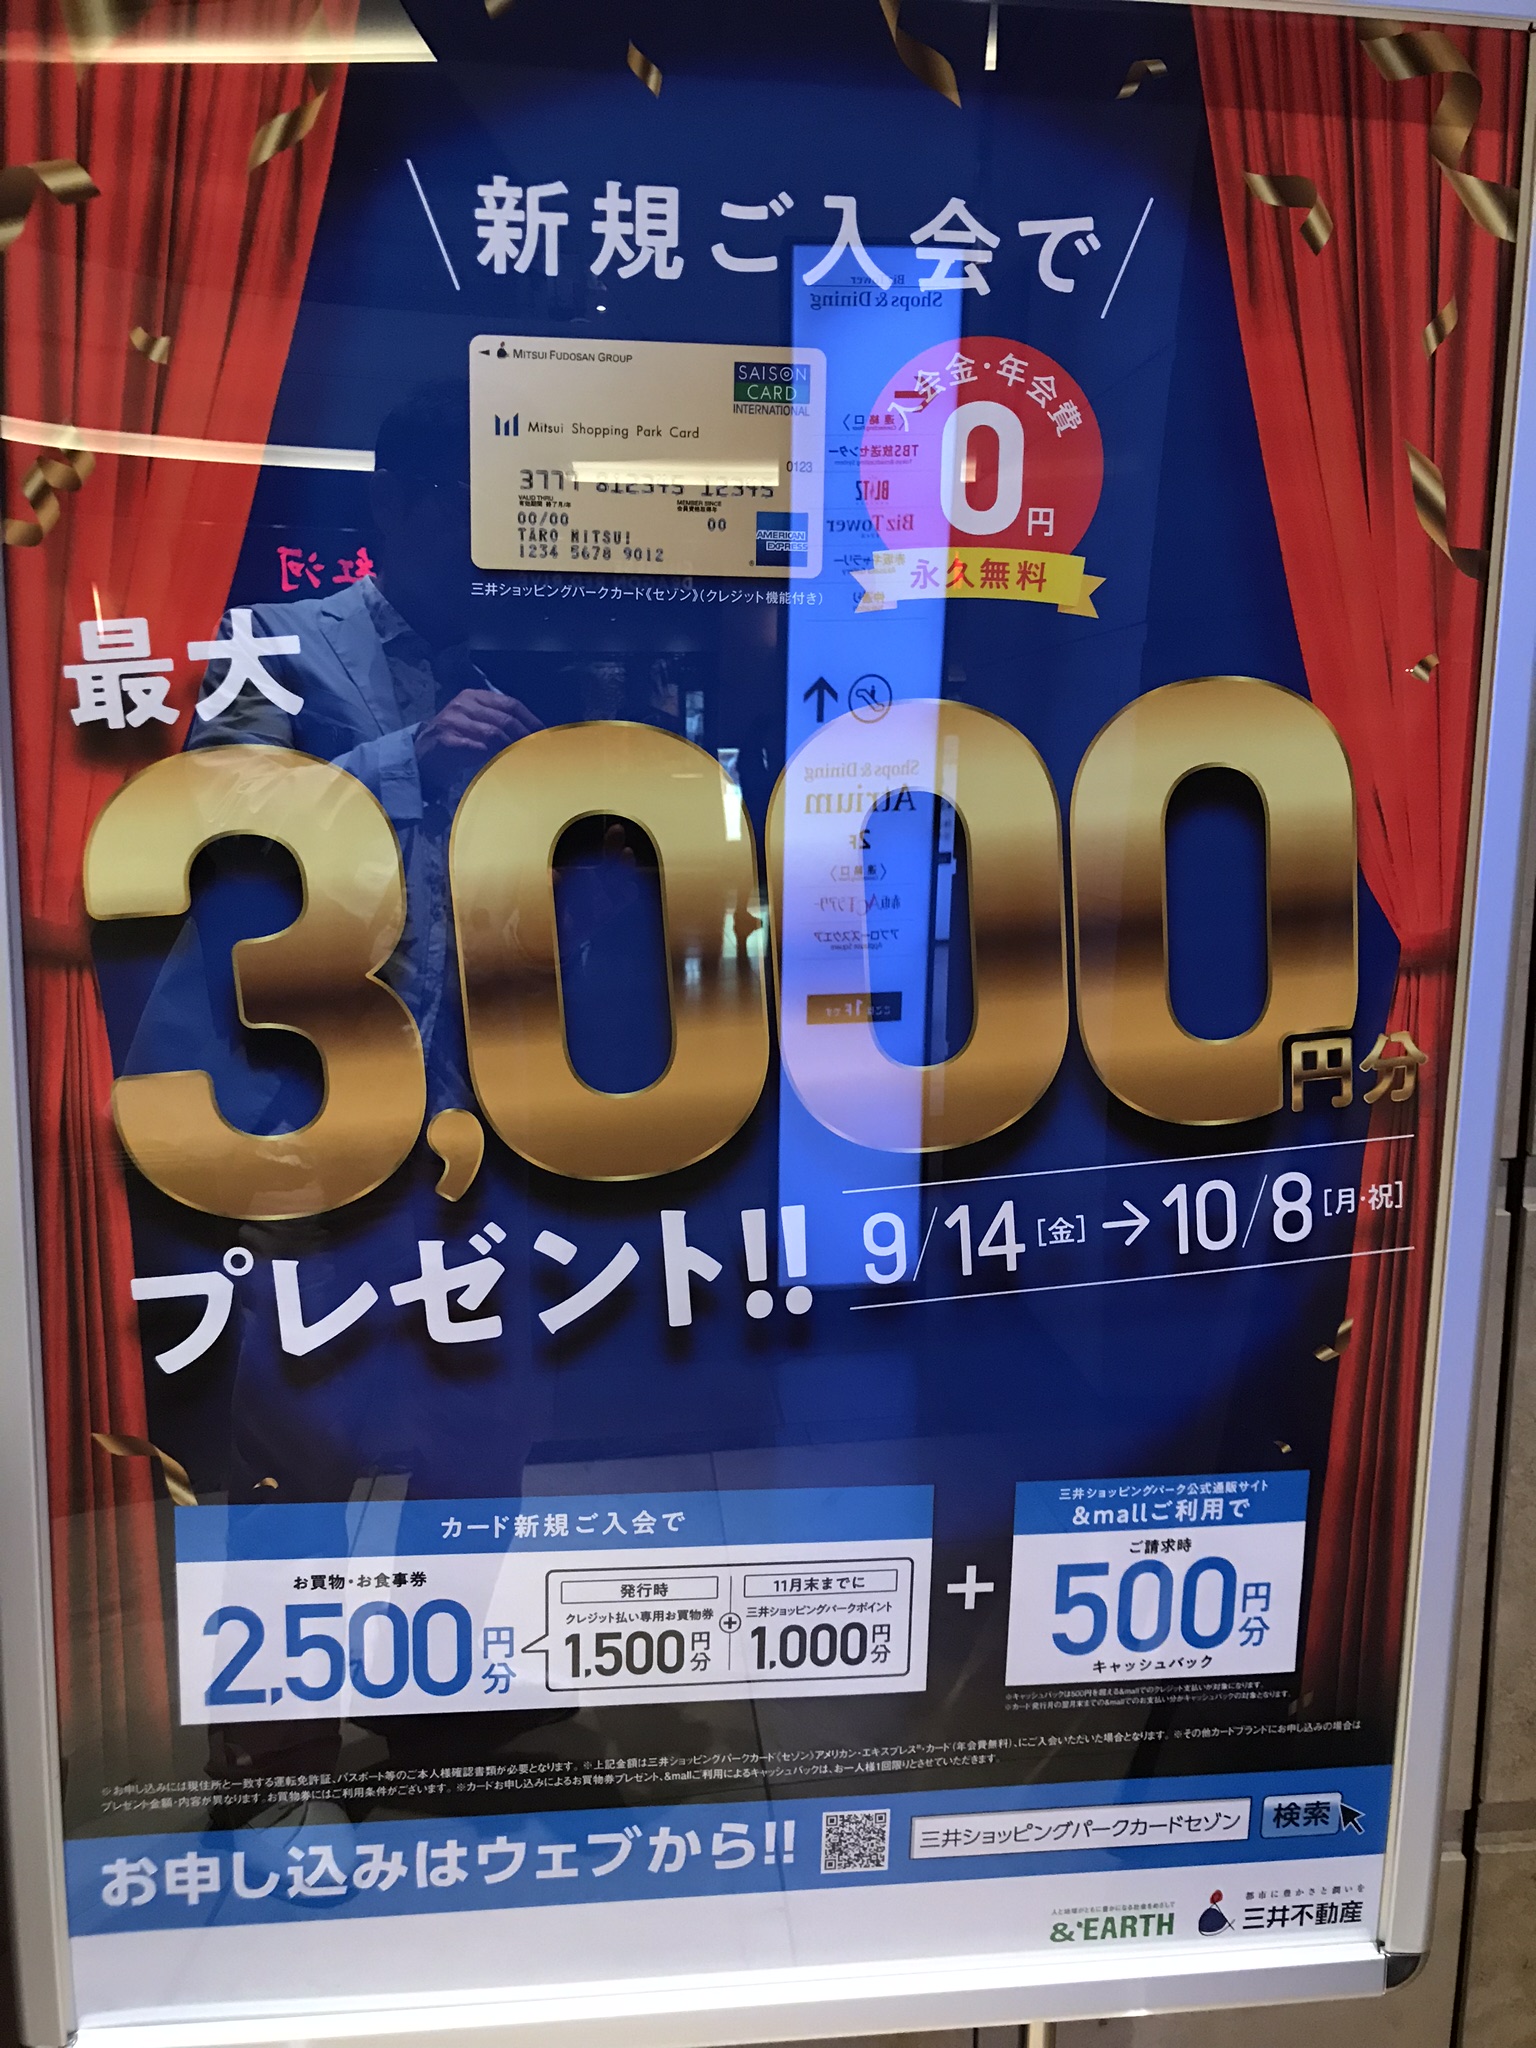 三井ショッピングパークカード3000ポイントプレゼント